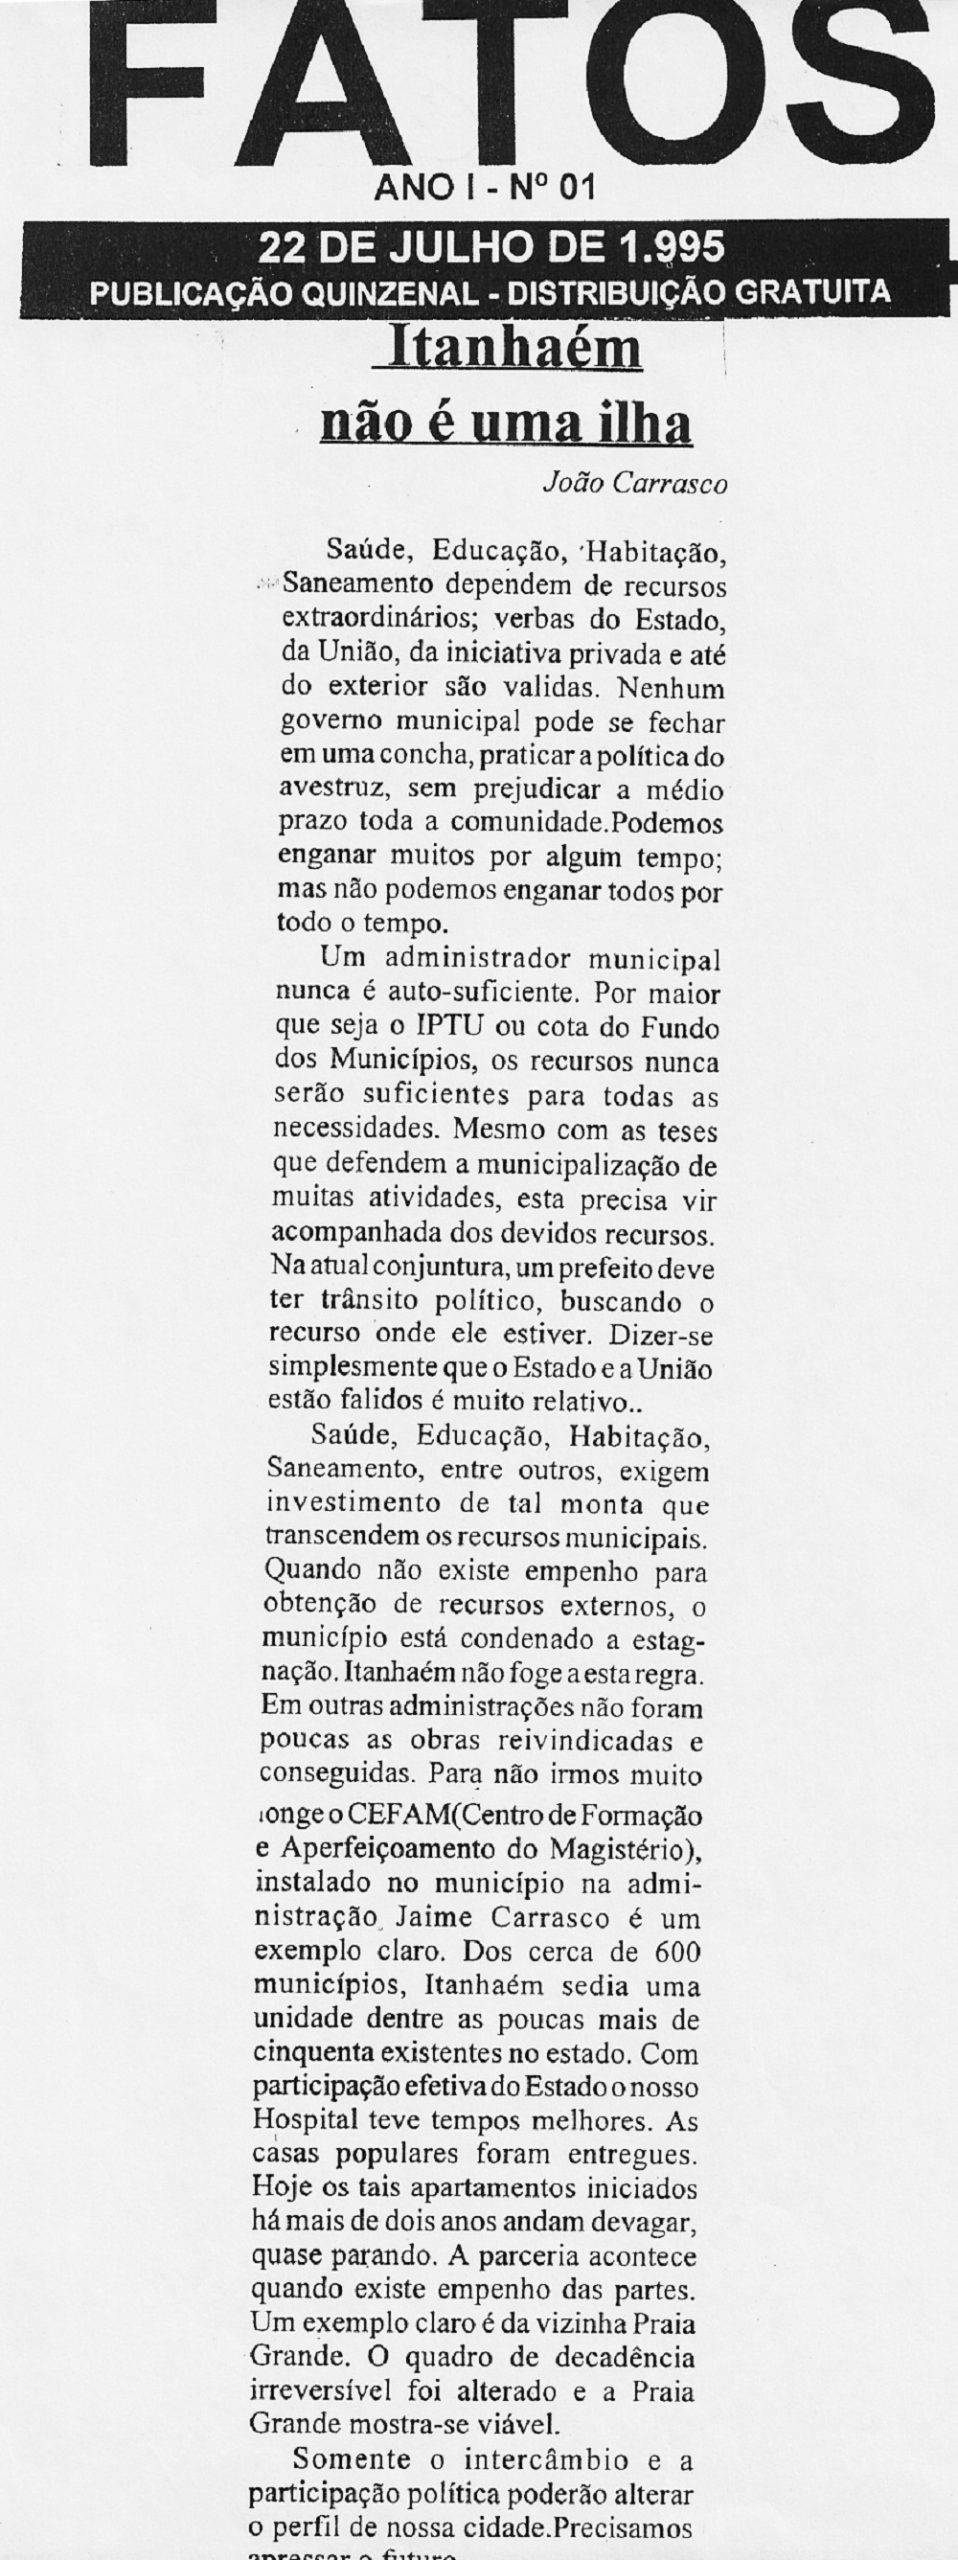 Calaméo - Jornal Ilha Repórter Janeiro #1 146